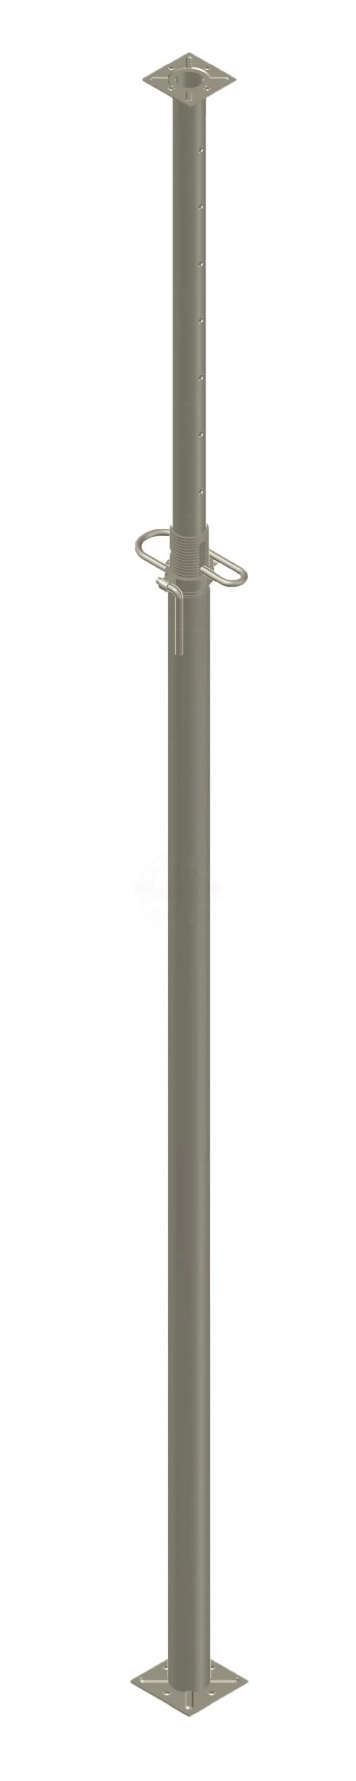 Стойка телескопическая Усиленная 2,1-3,7м для опалубки перекрытий, купить  Опалубку в Абакане